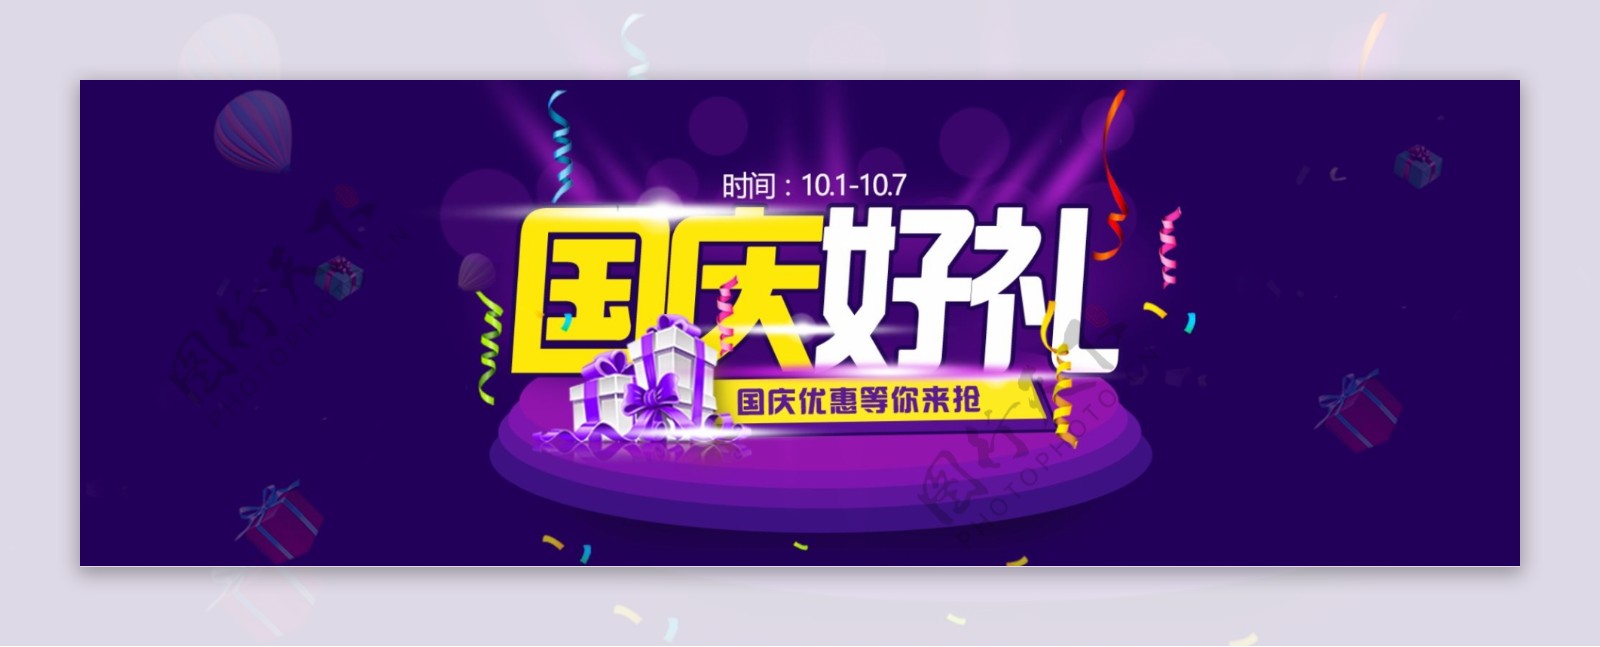 国庆海报banner